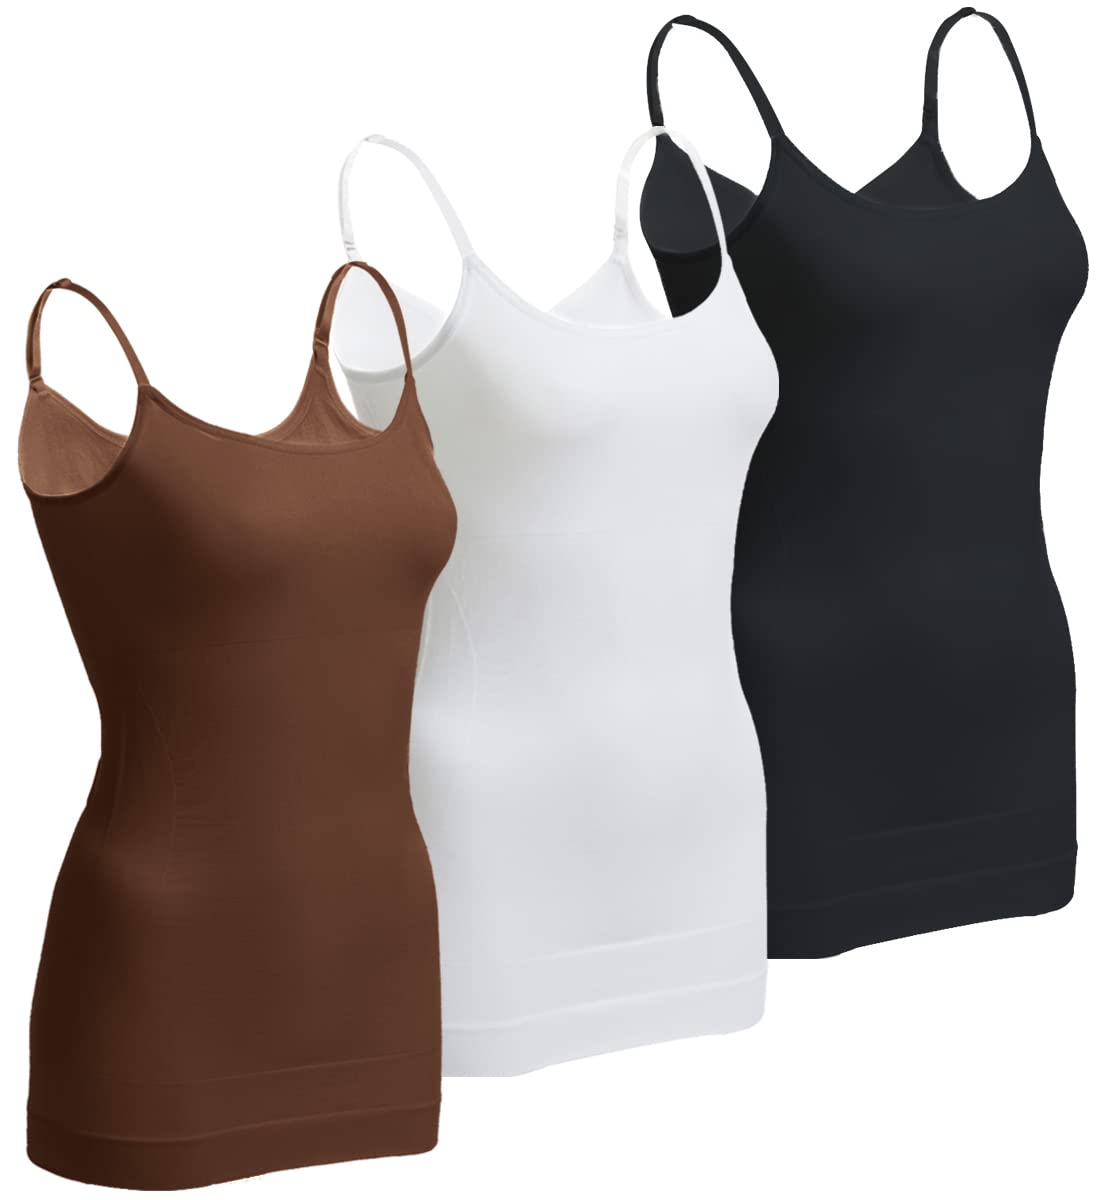 olchee OLCHEE Women's 3PACK Tummy Control Shapewear Tank Tops - Seamless  Wide Shoulder Strap Slimming Body Shaper, Black White Beige, S